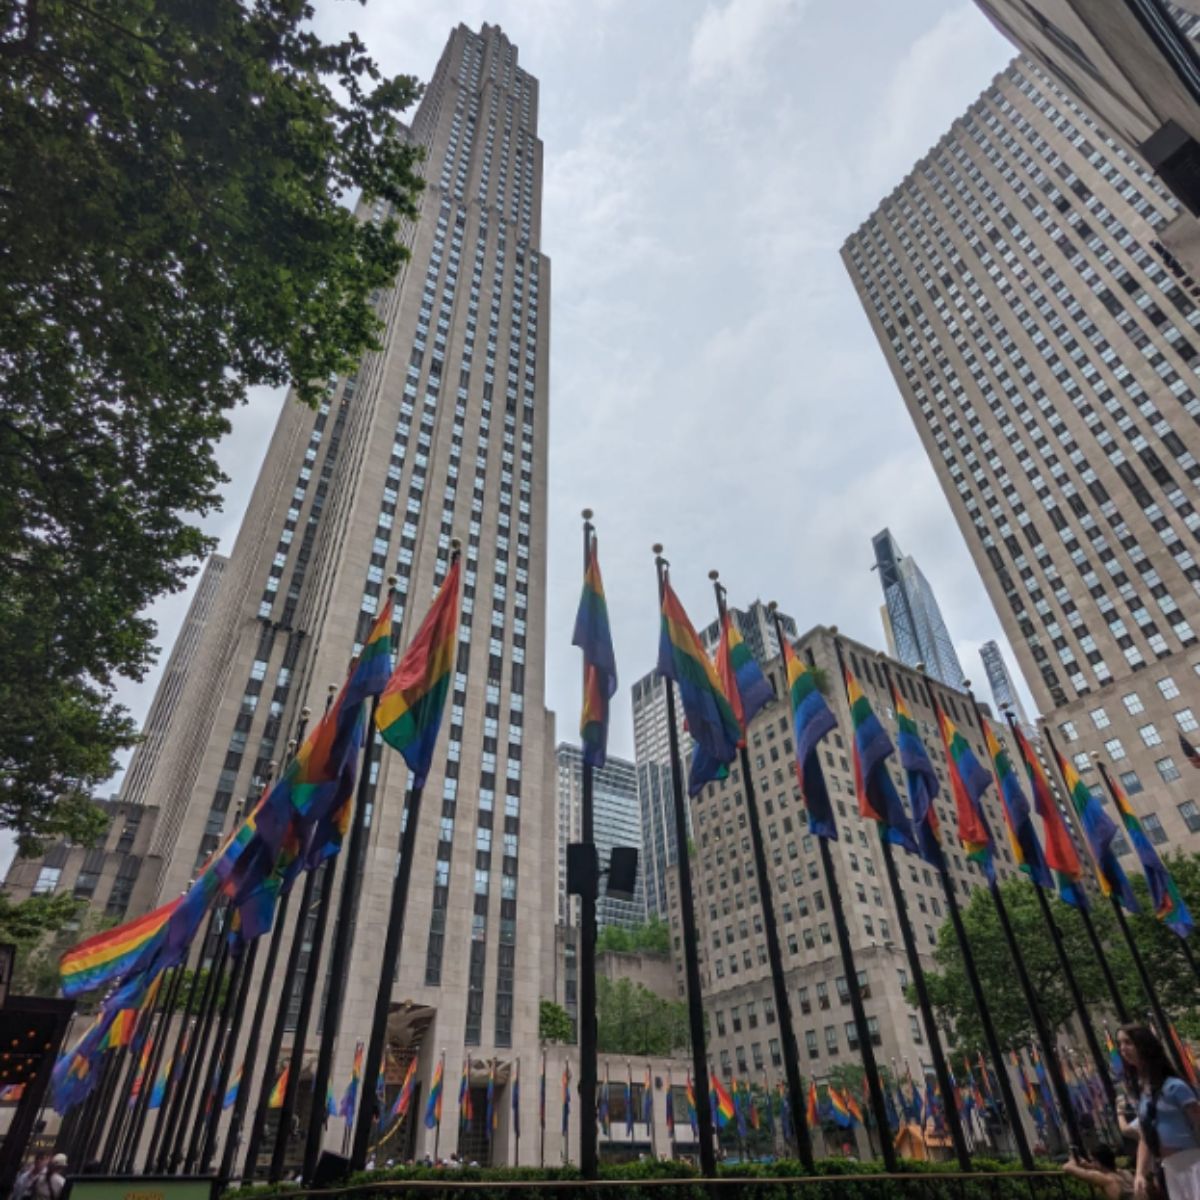 Día del Orgullo gay Nueva York - Así es ser gay en New York; colombianos cuentan su experiencia